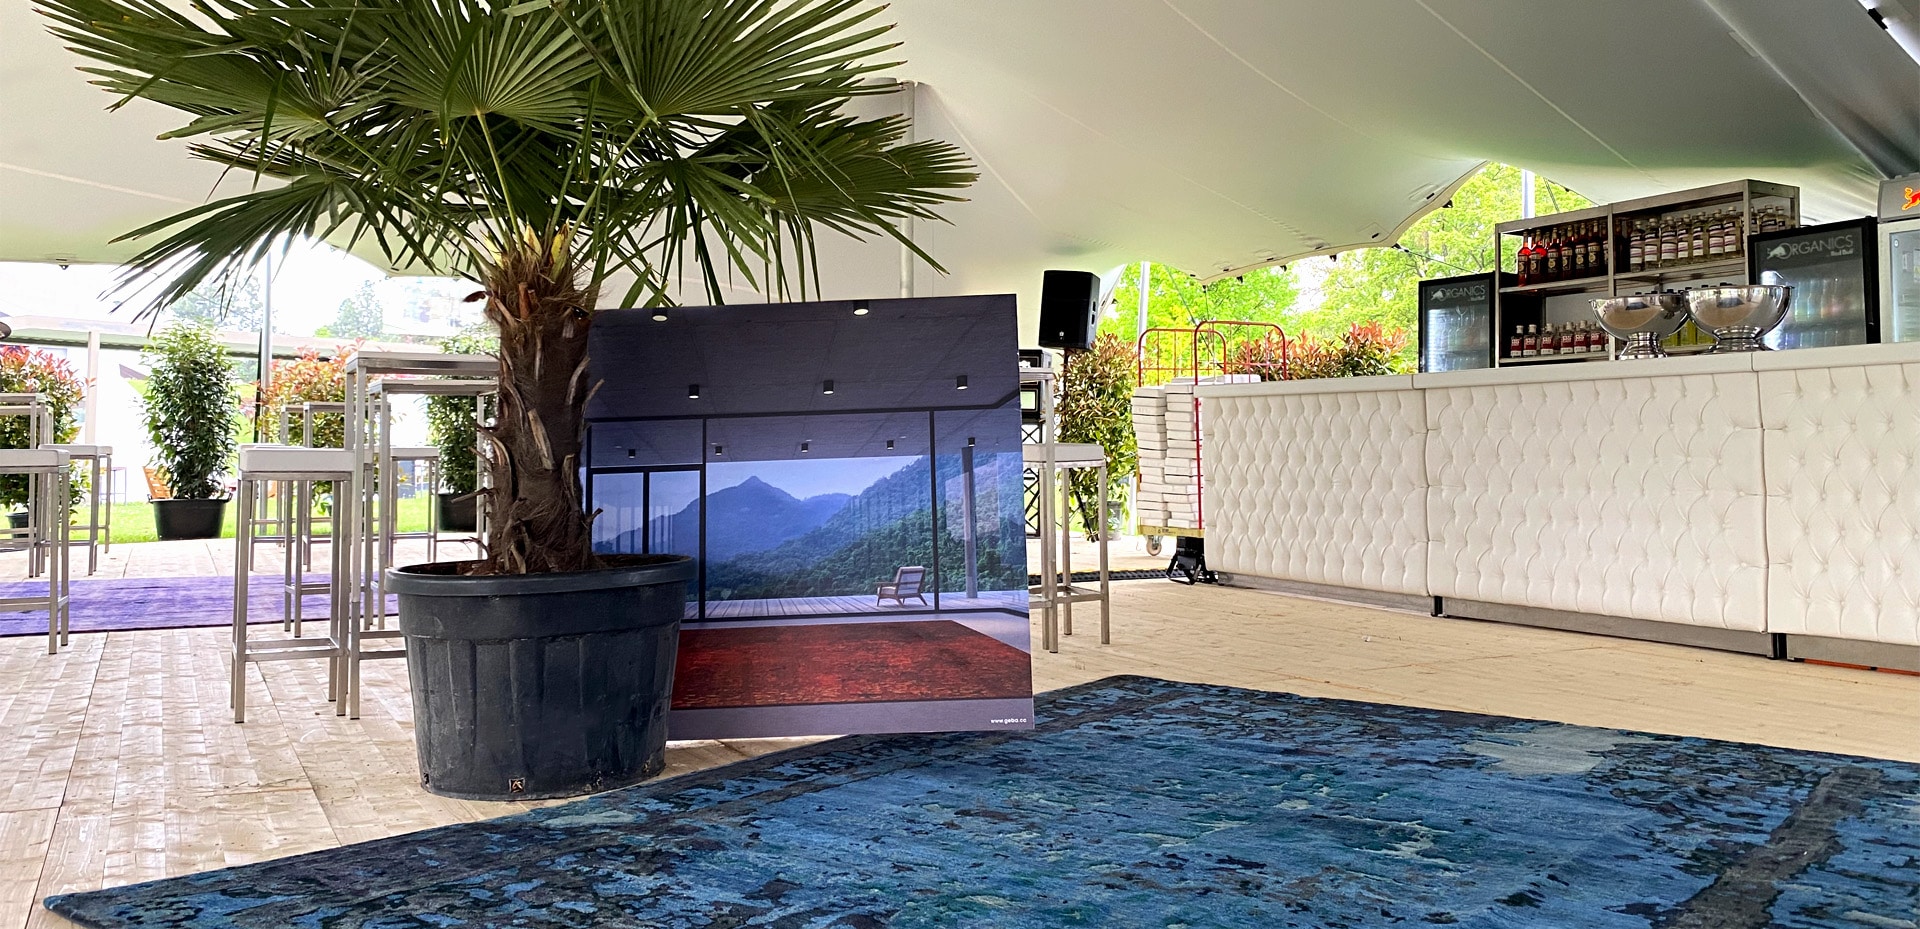 Geba Teppich "Antique Blue" ziert die Lounge der "Design Days 2022" im Schloss Grafenegg - Geba Teppich